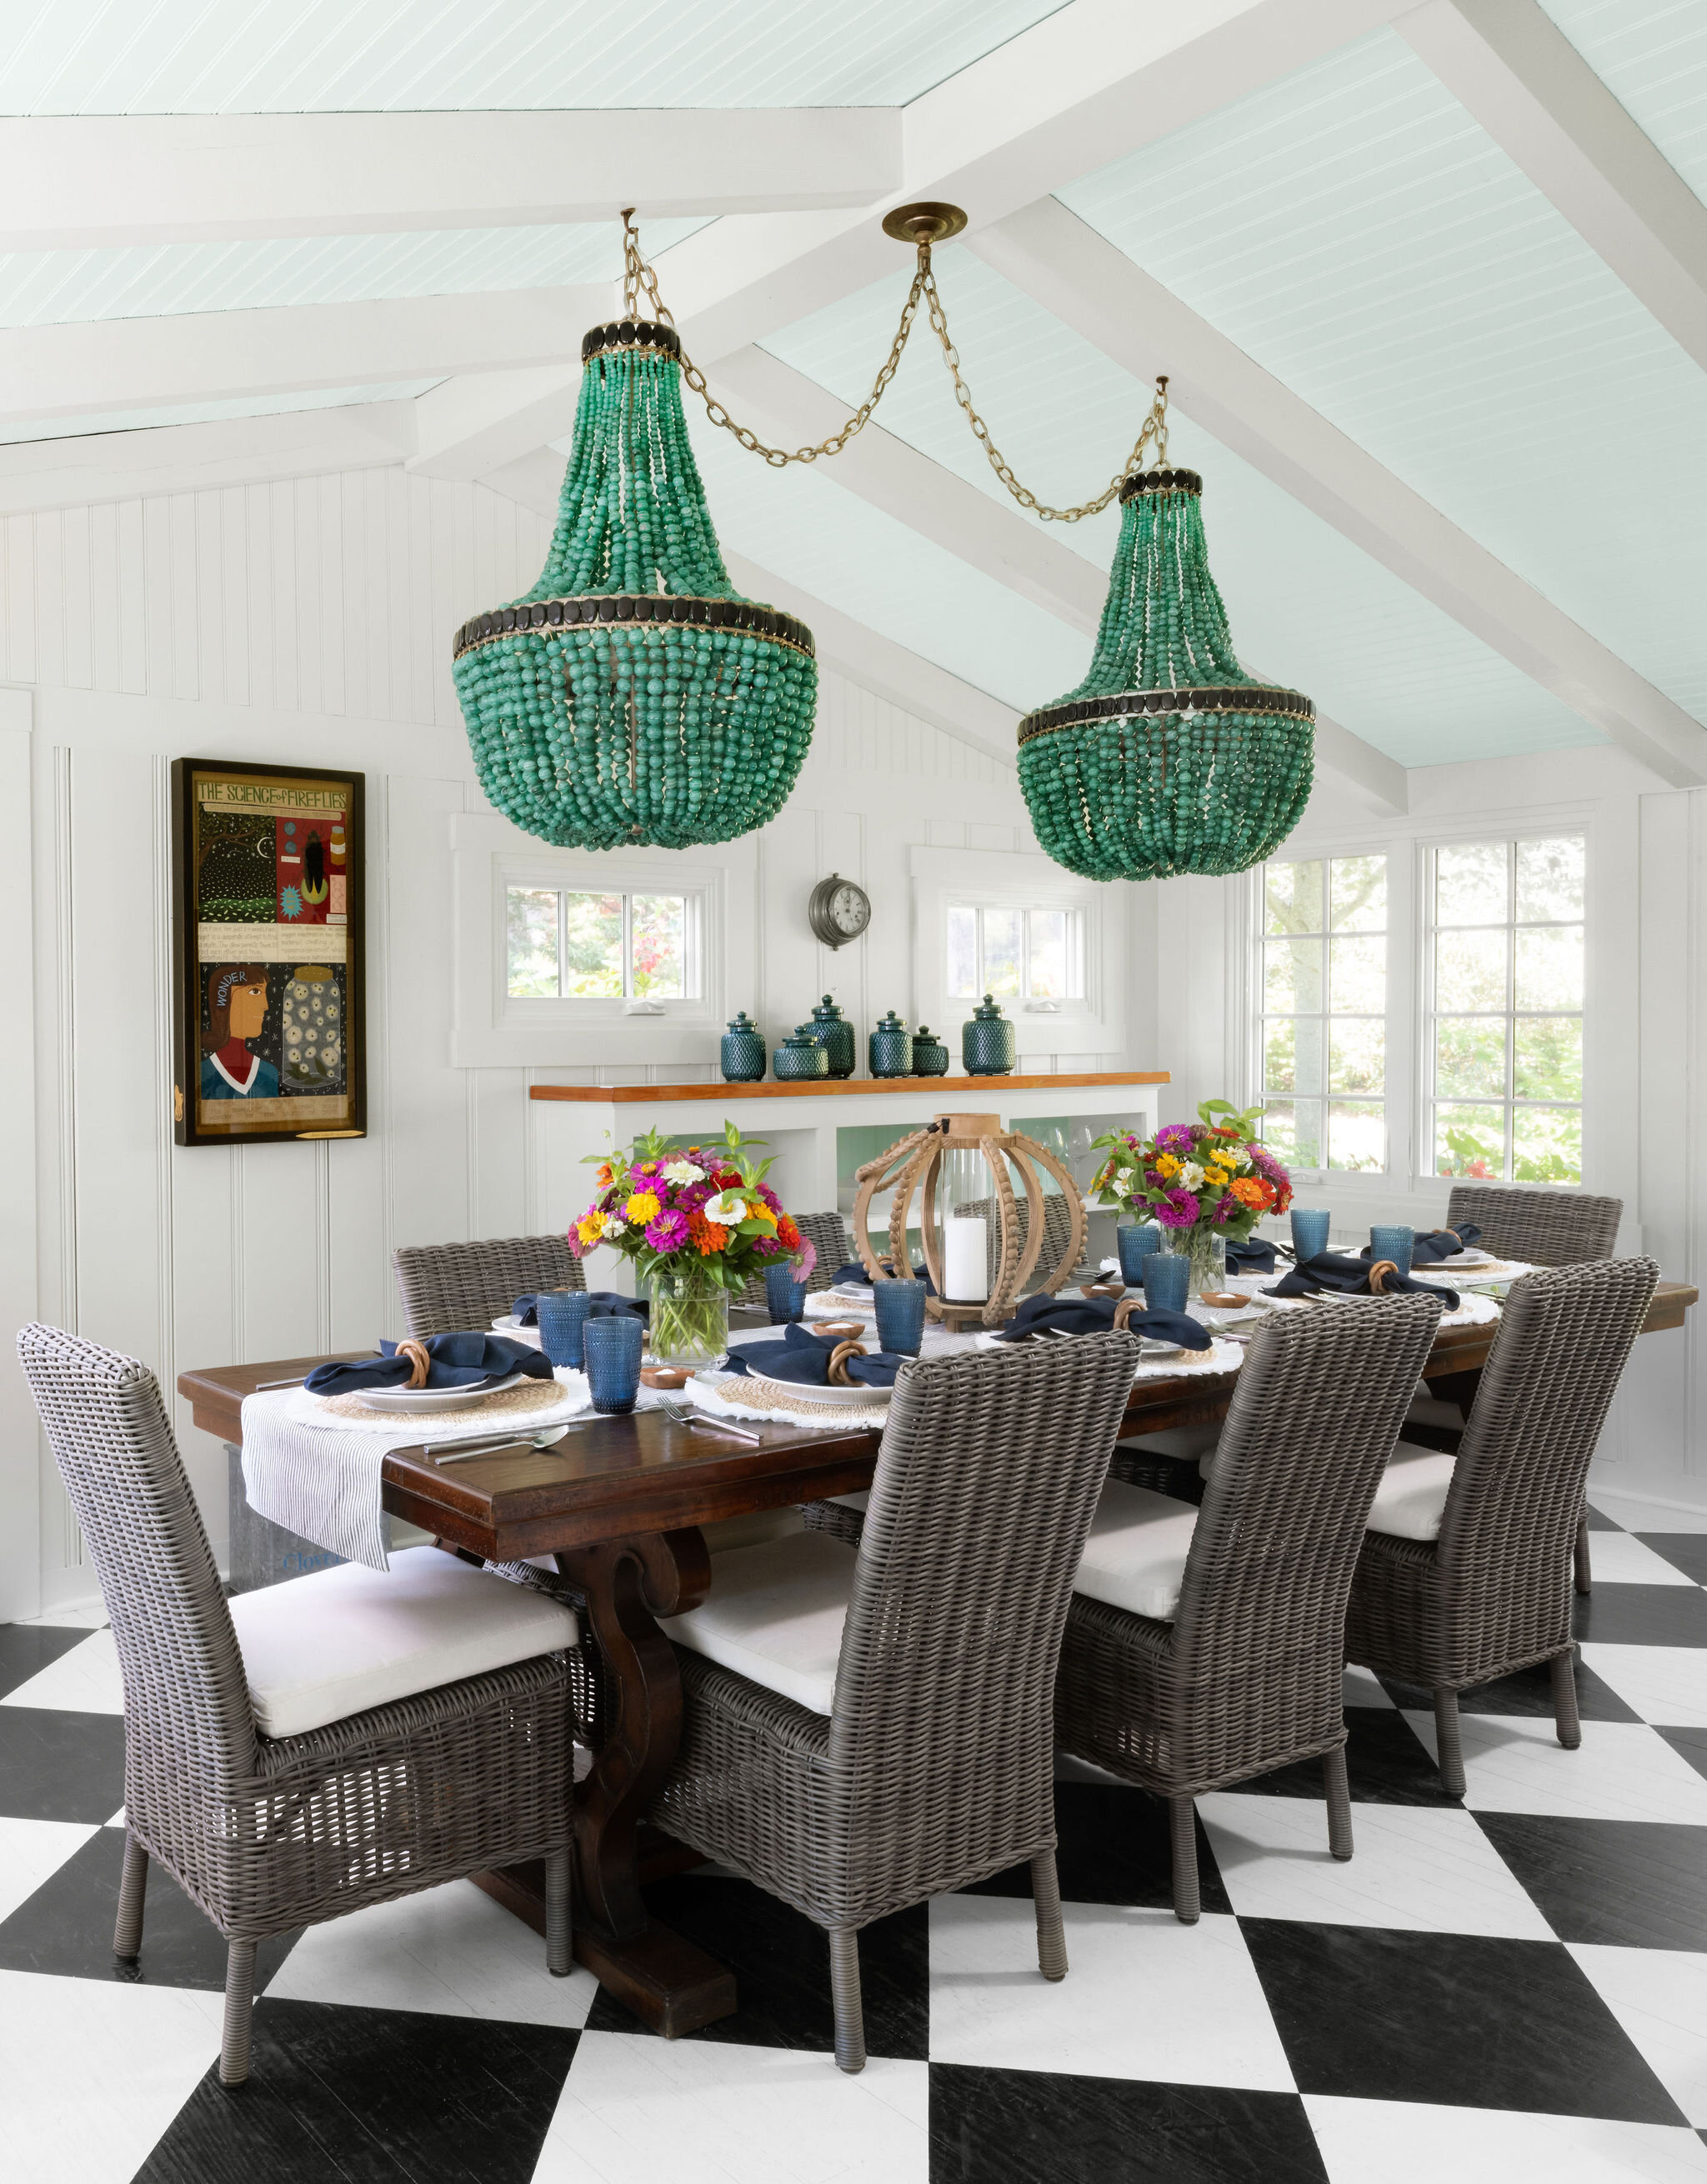 bayhouse-dining room-MD-DC-VA-interior design.jpg